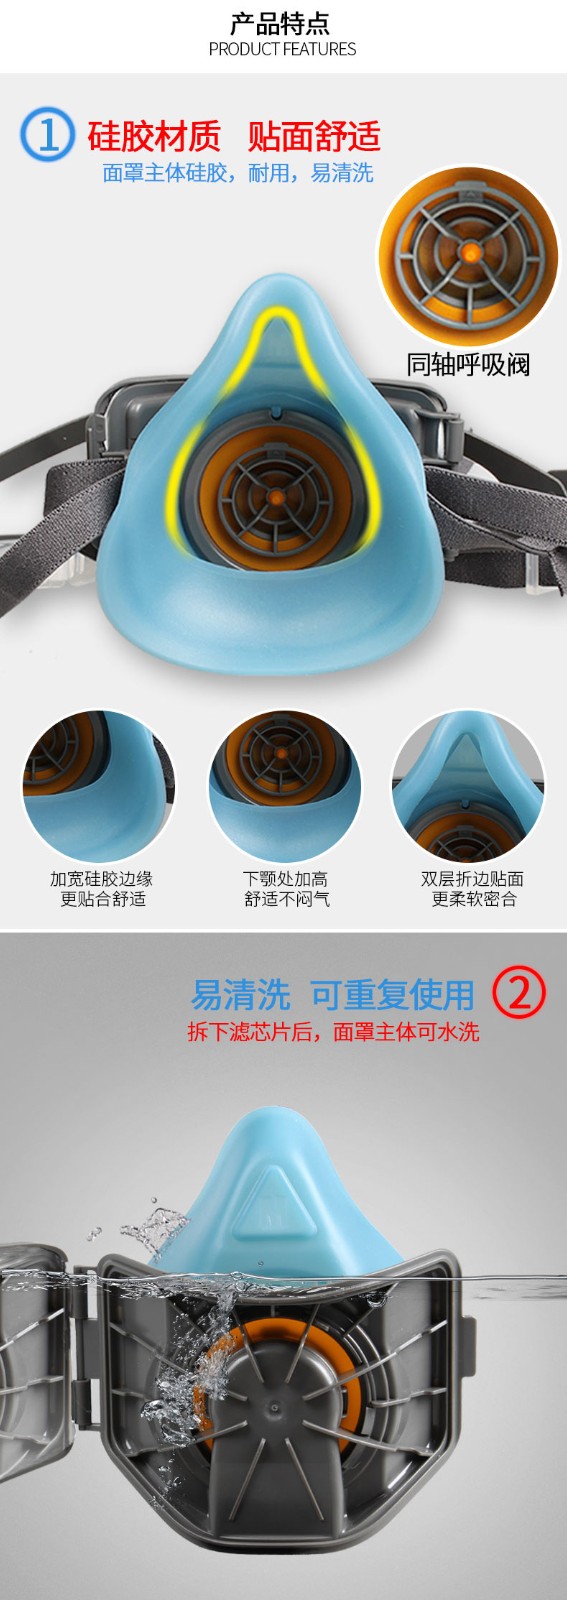 思创ST-1020A硅胶防尘面具图4